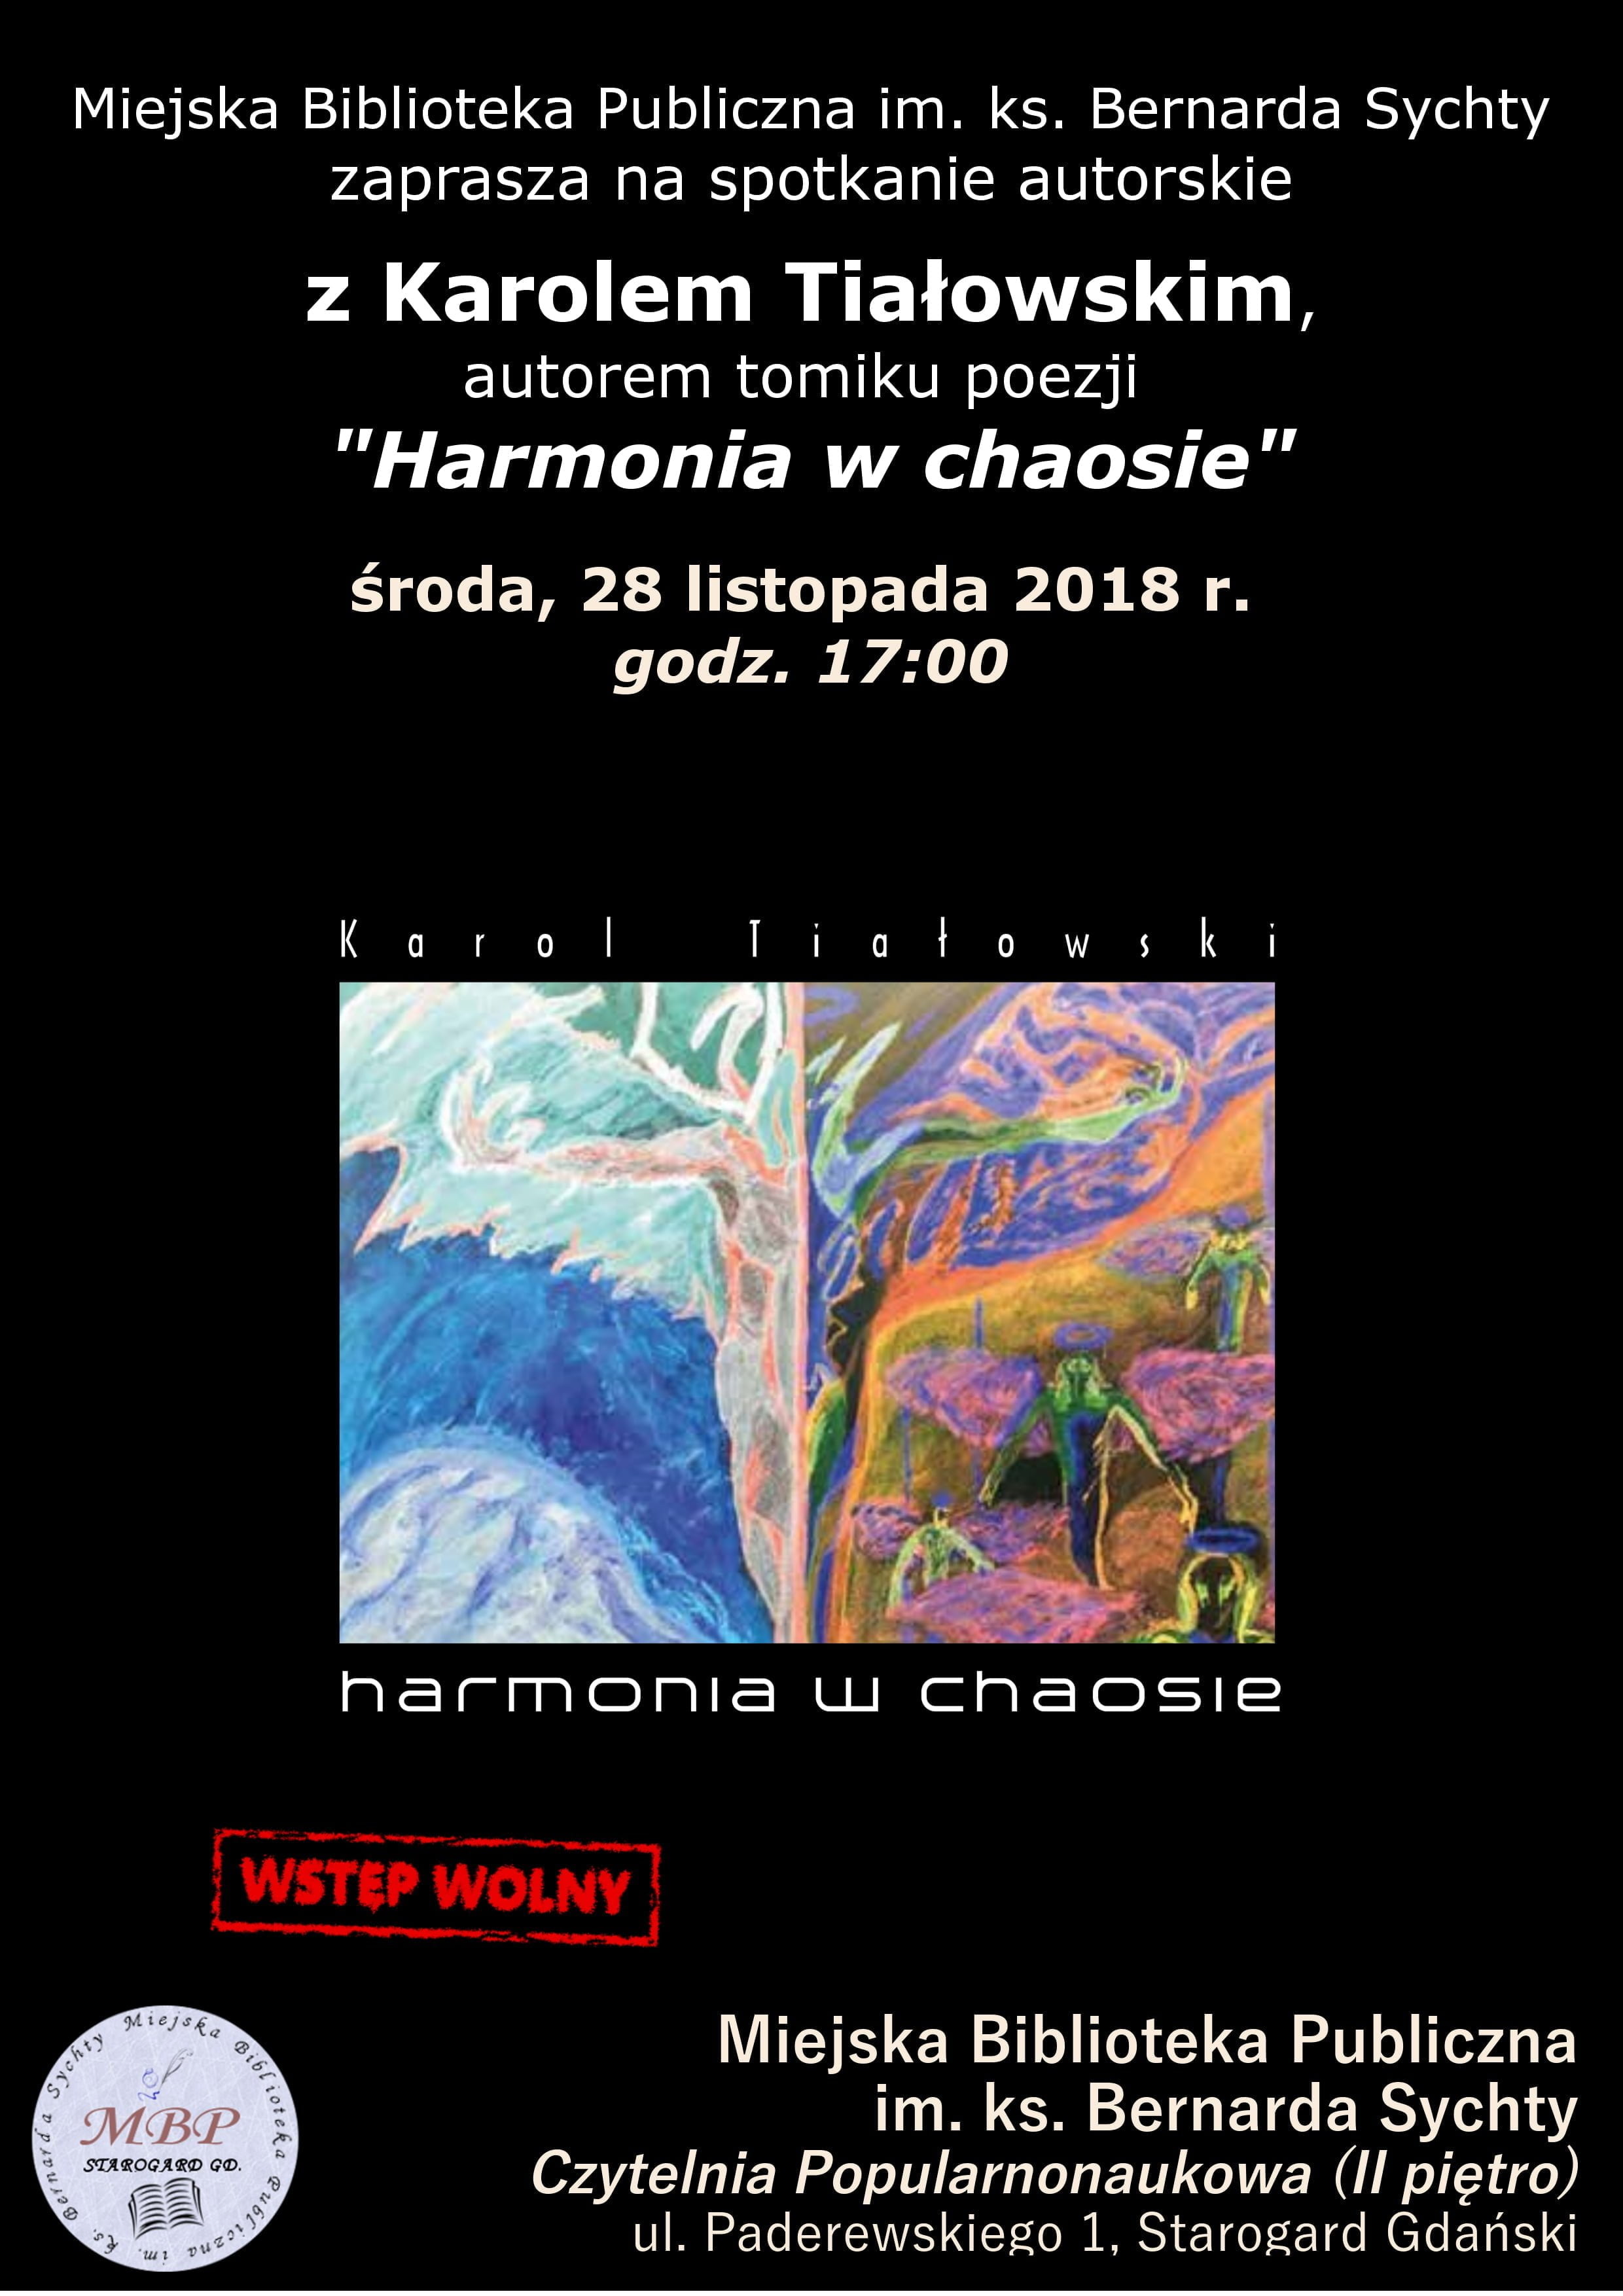 Spotkanie autorskie z Karolem Tiałowskim, autorem tomiku poezji "Harmonia w chaosie"